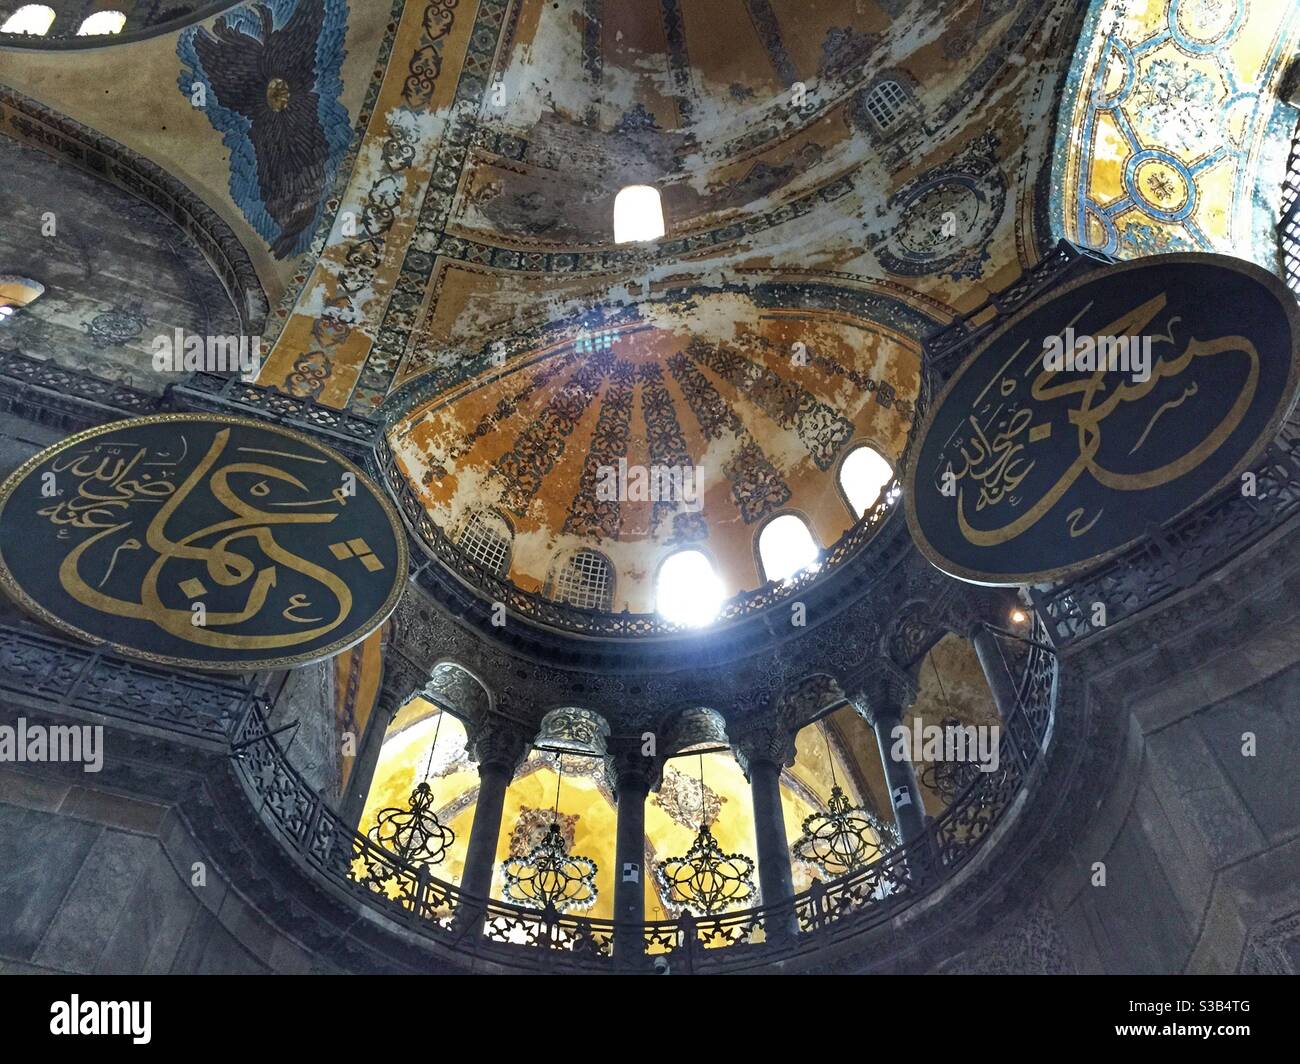 Hagia Sophia inside walls and art marks Stock Photo